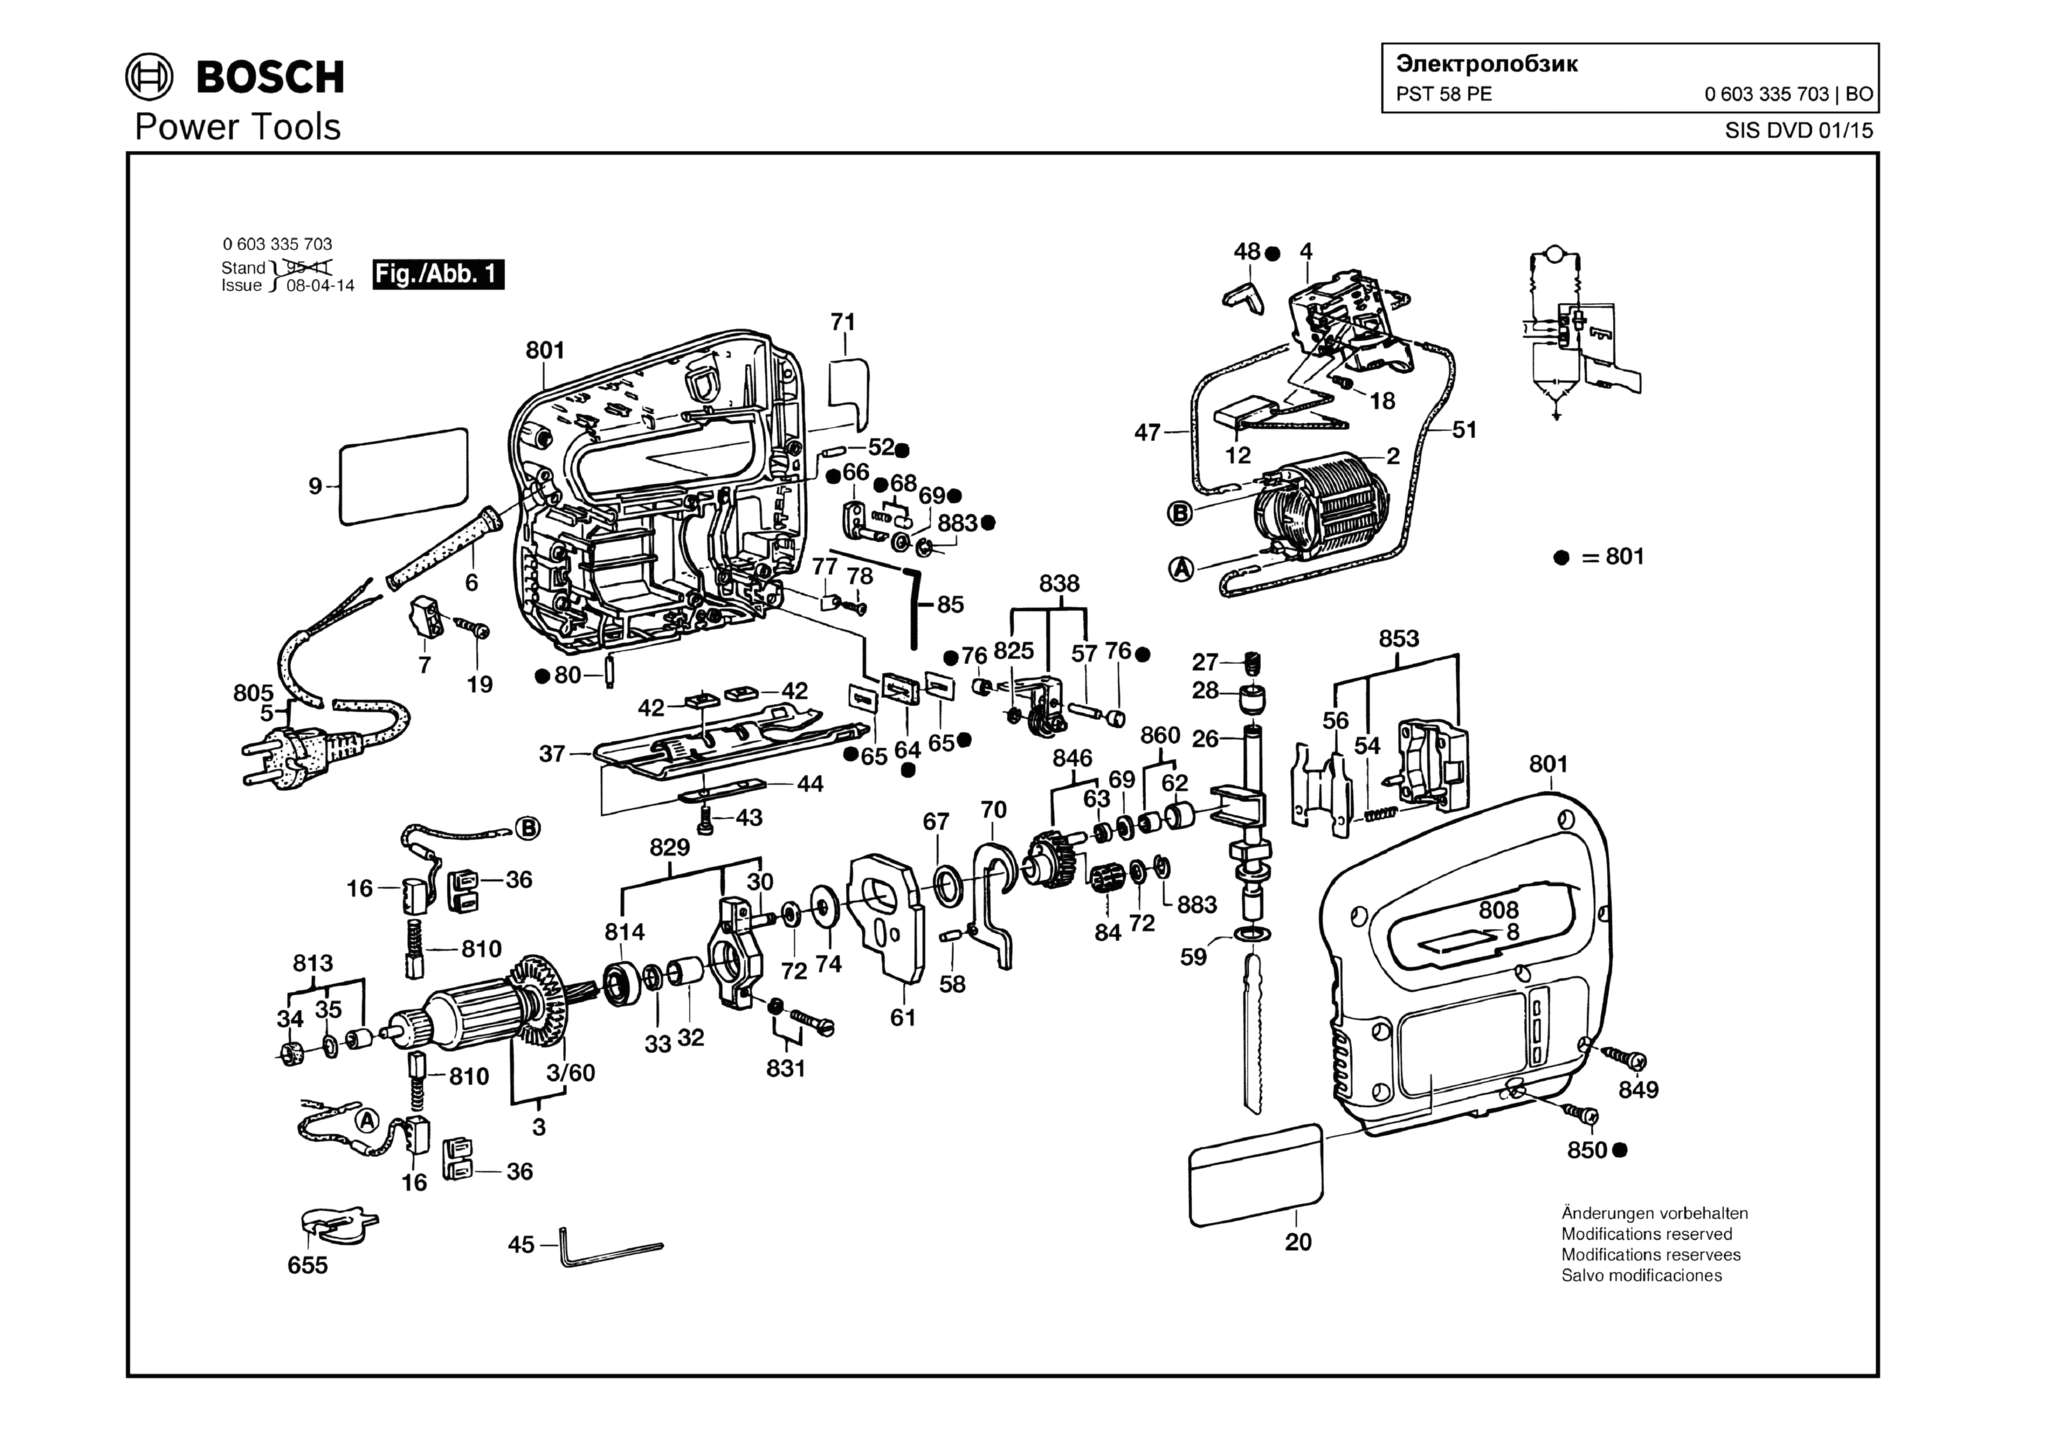 Запчасти, схема и деталировка Bosch PST 58 PE (ТИП 0603335703)